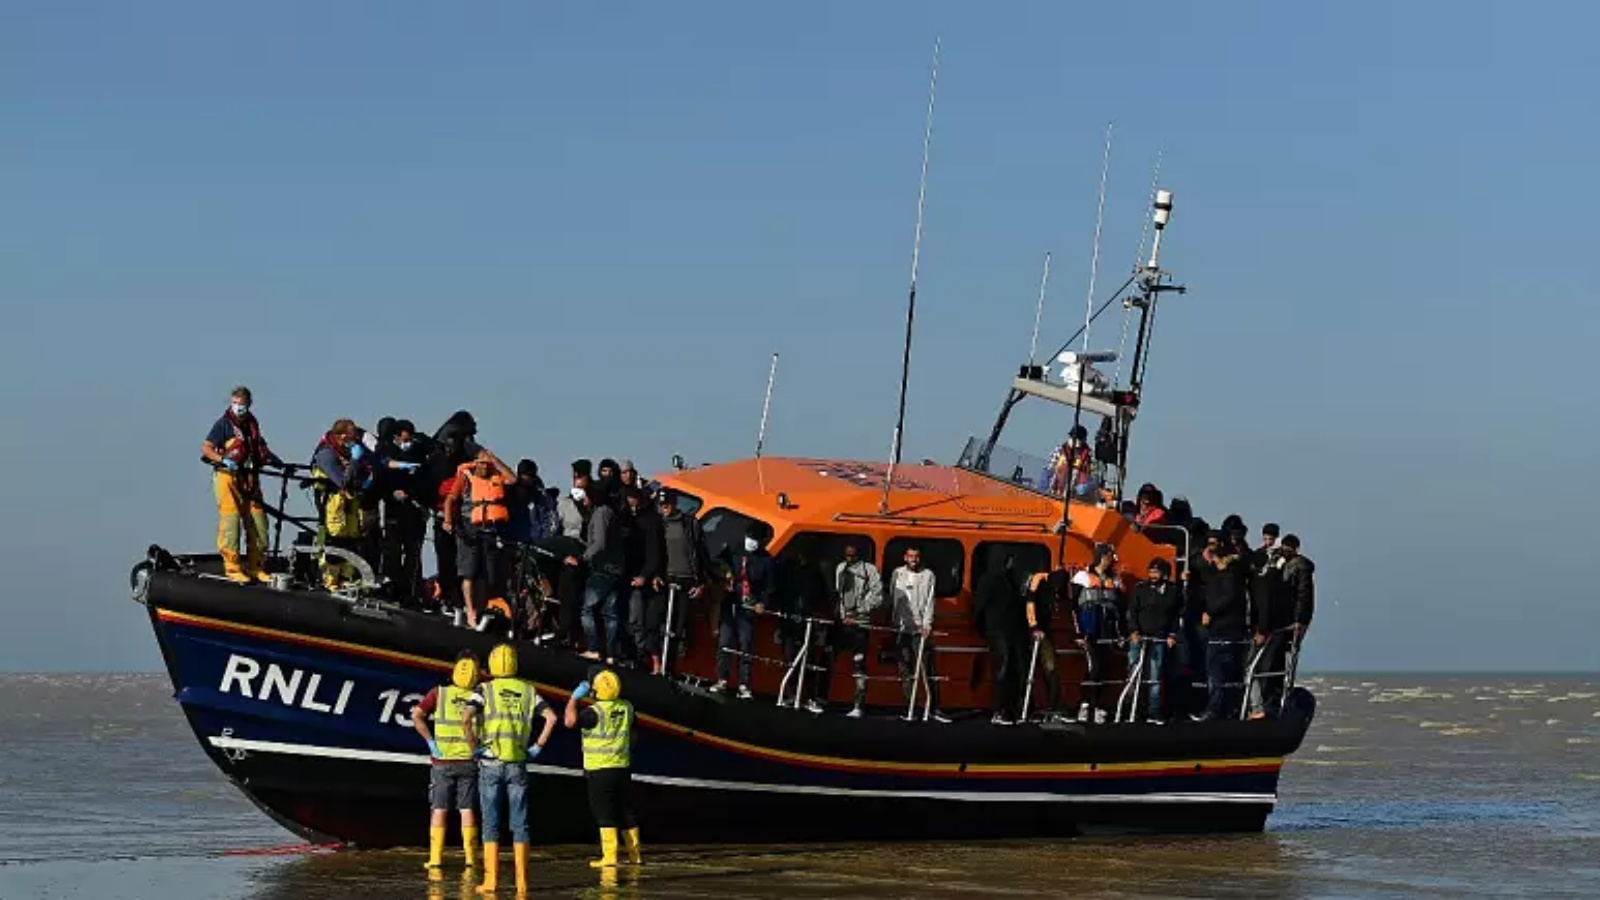 مهاجرون يقفون على متن قارب نجاة RNLI (المؤسسة الملكية الوطنية لقوارب النجاة) بعد أن يتم إنقاذهم عبر القناة الإنكليزية في Dungeness، إنكلترا، 7 سبتمبر 2021